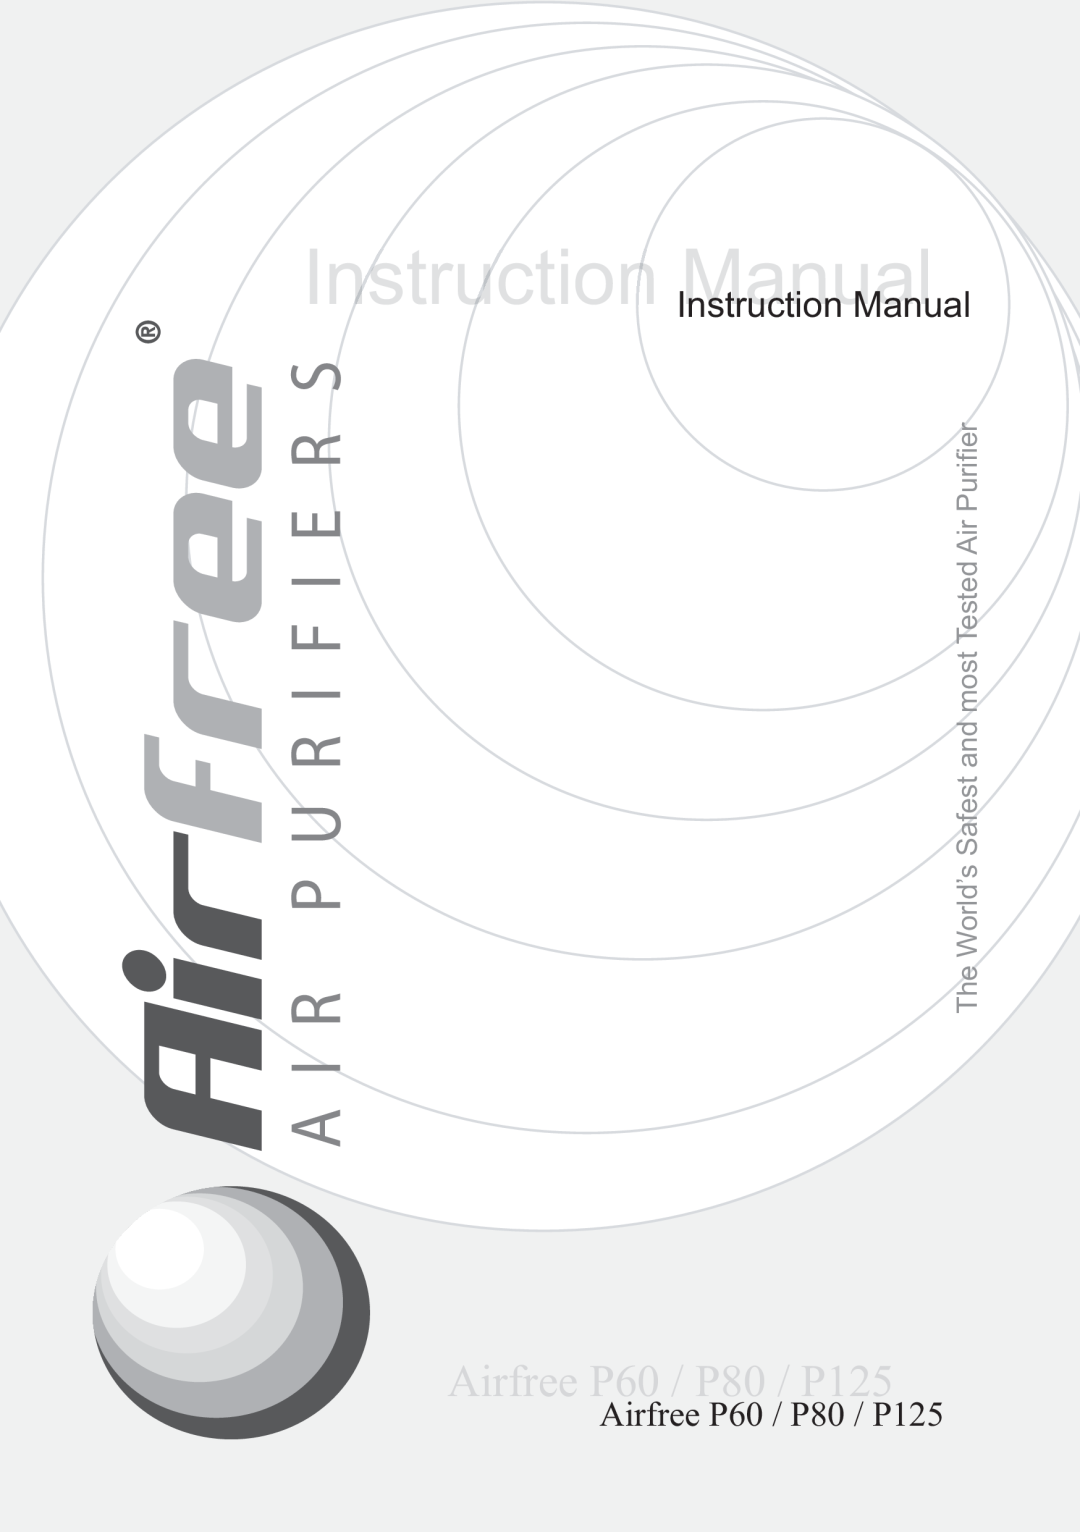 Airfree instruction manual Instruuctionn Manual, Airfree P60 / P80 / P125 